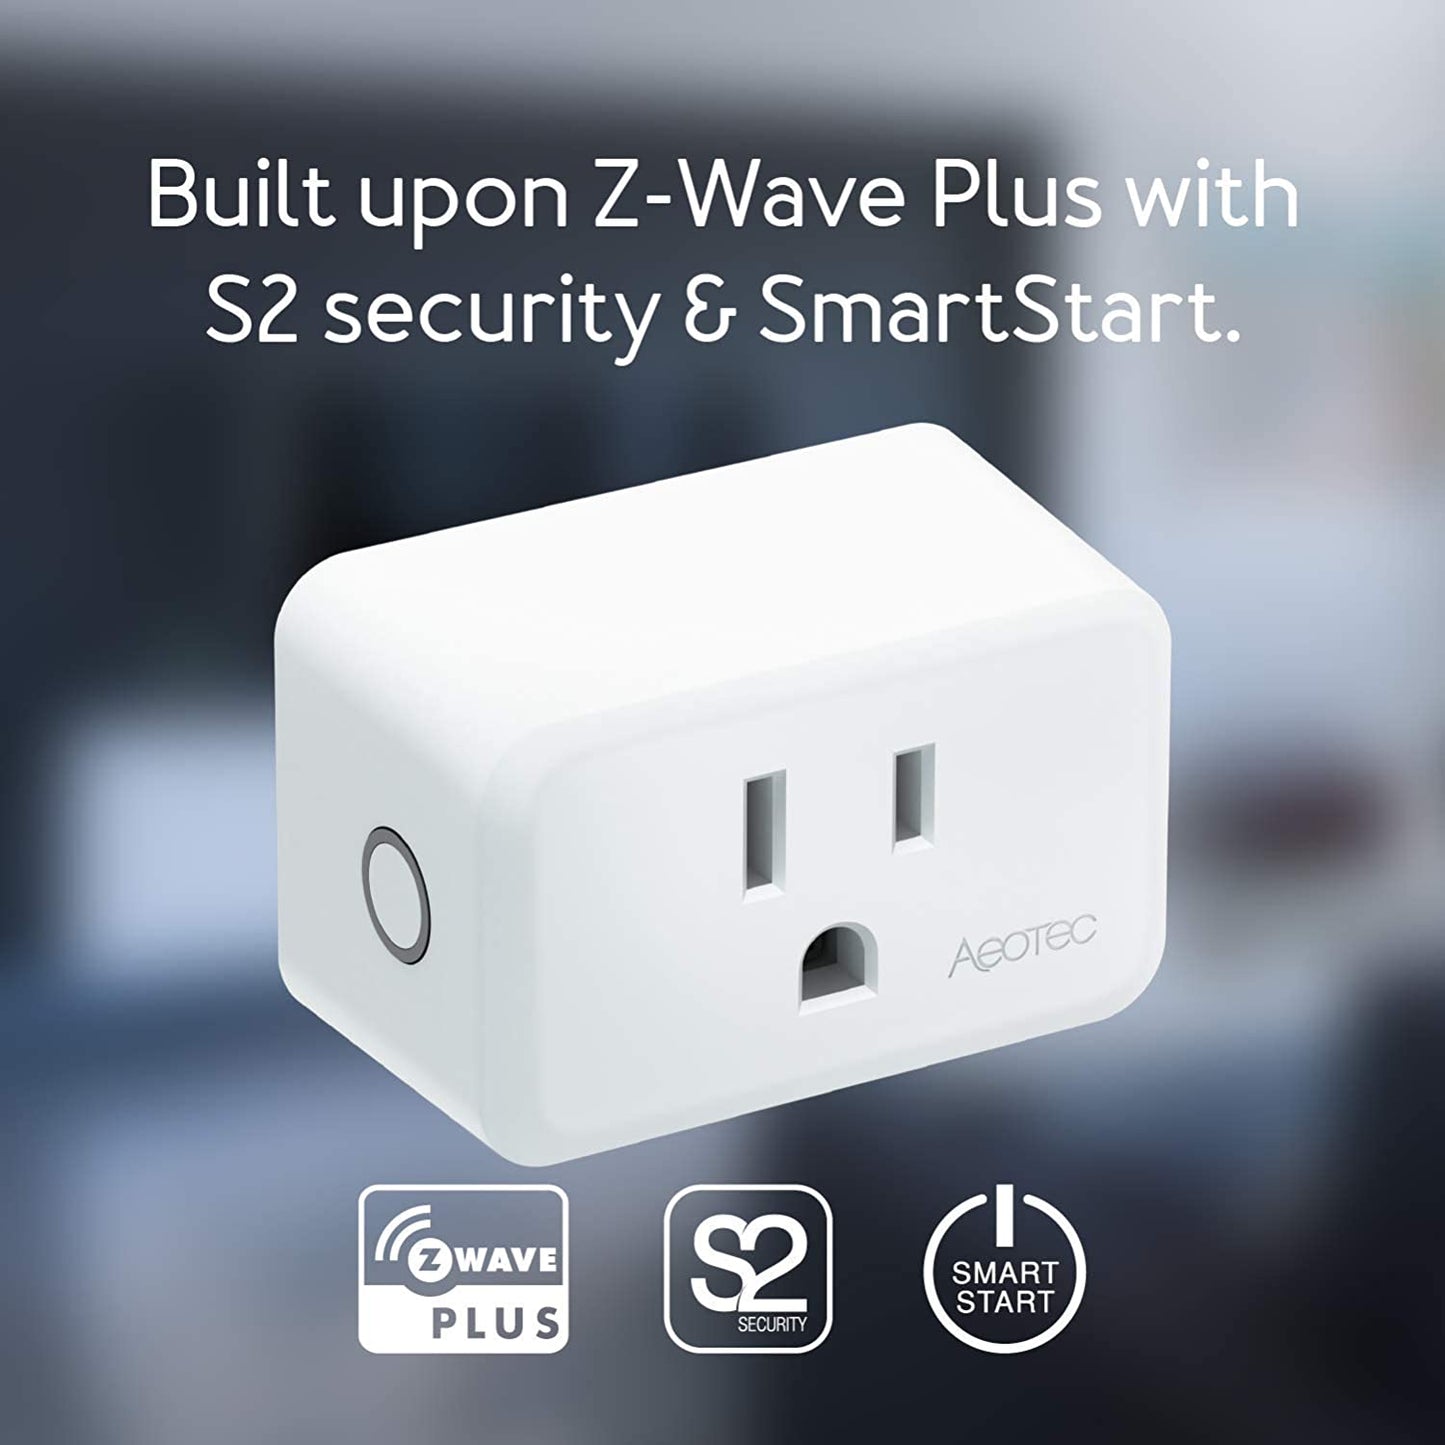 Aeotec Smart Switch 7; Z-Wave Plus smart plug, 15 amps, Gen7 (ZWA023)